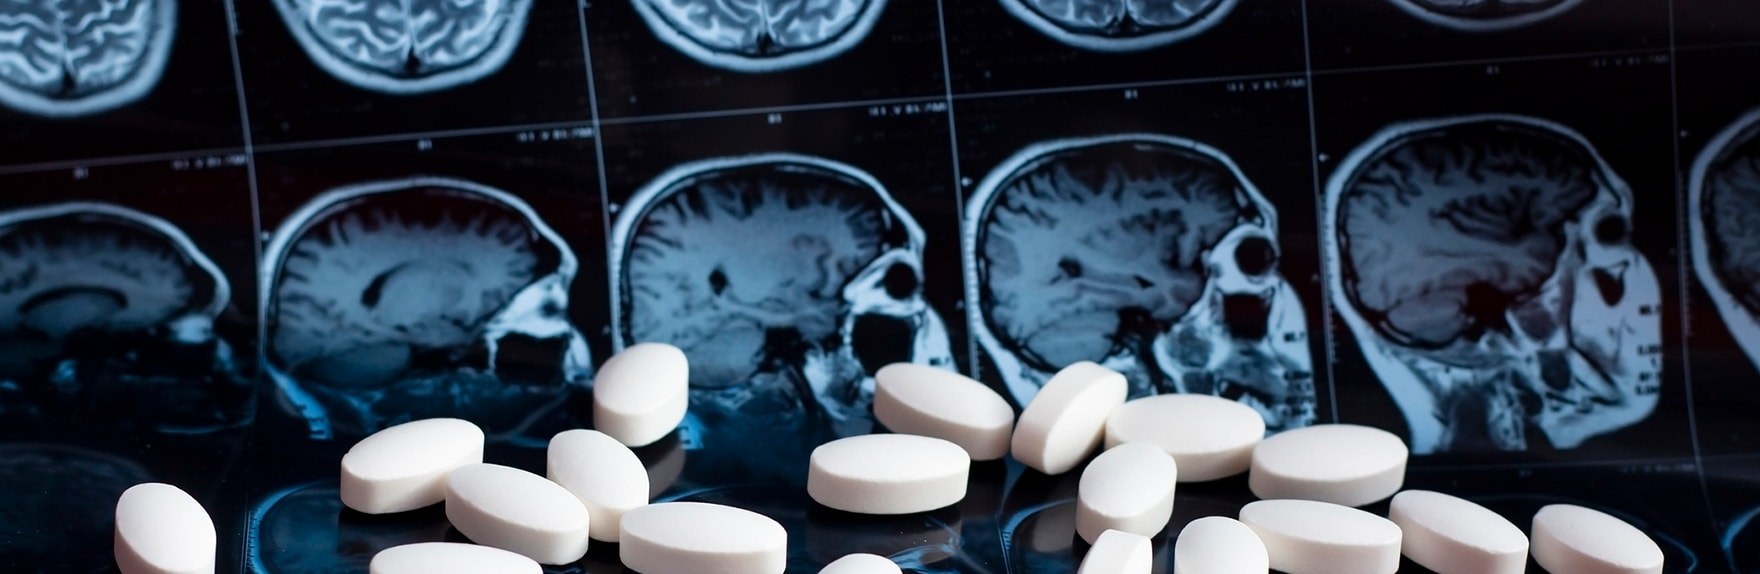 Quels sont les effets de la drogue sur le cerveau?